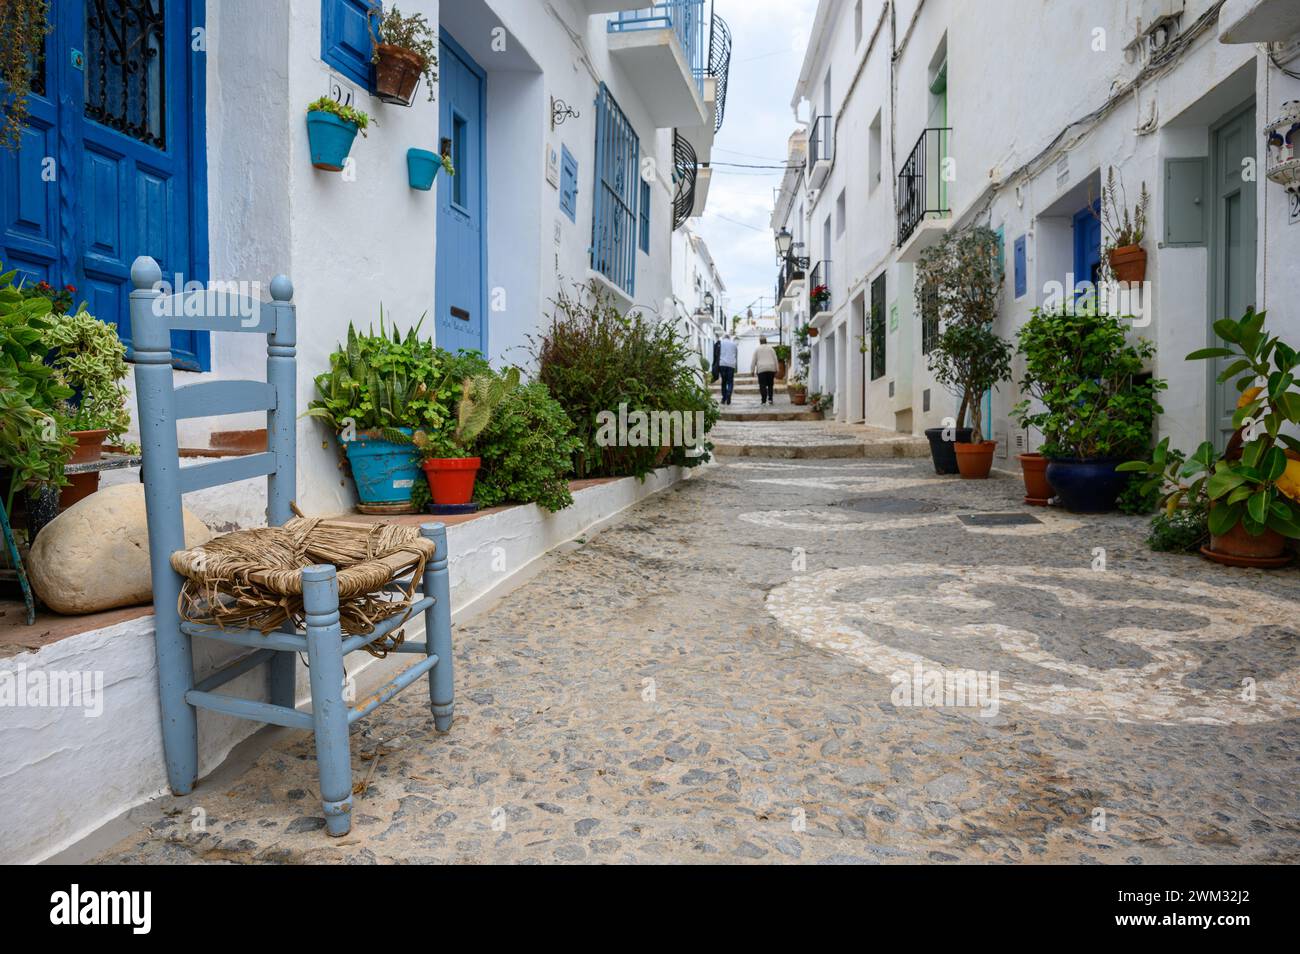 Une vieille chaise bleue dans la rue du merveilleux village de Frigiliana avec des maisons blanches avec des portes et des fenêtres bleues, Malaga, Andalousie, Espagne Banque D'Images